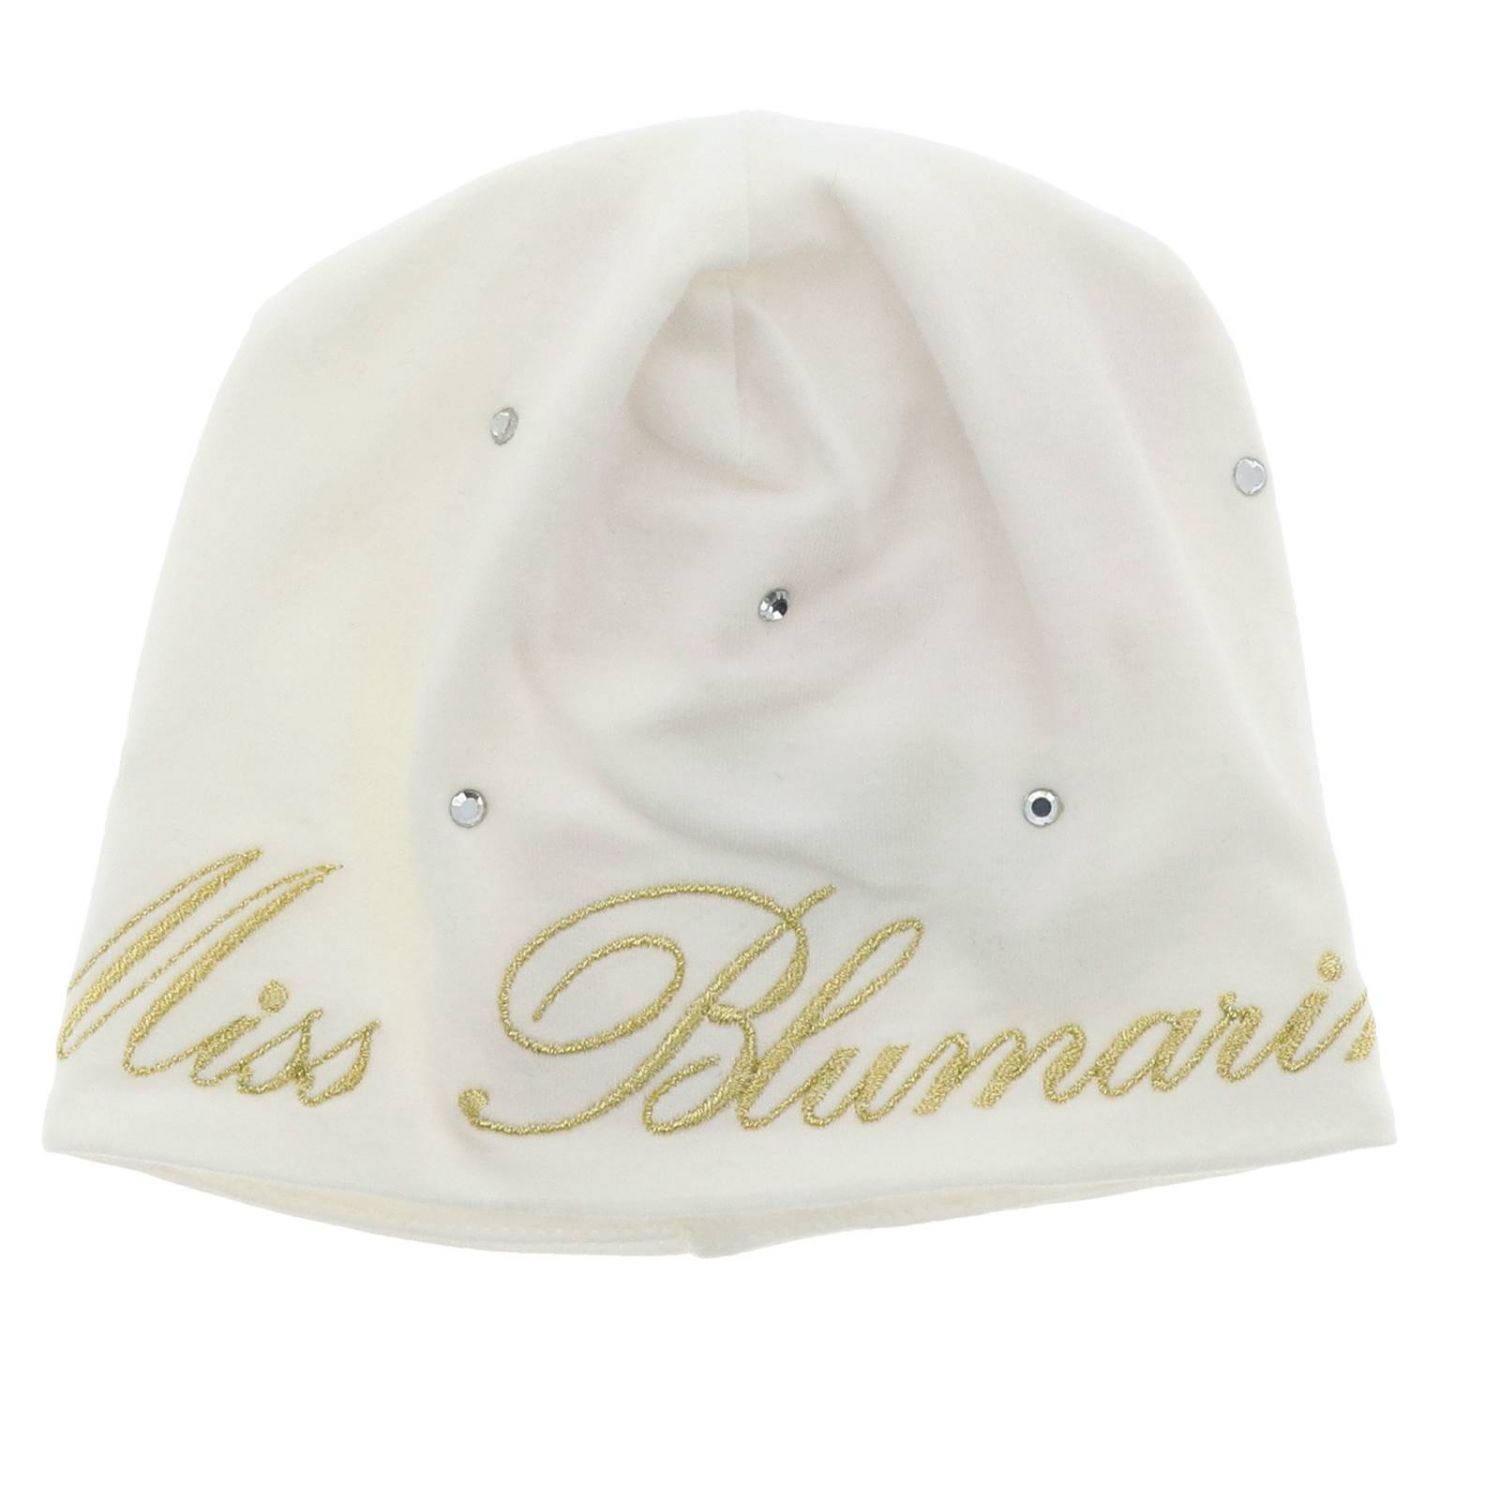 Hüte für Mädchen Miss Blumarine: Hut mädchen kinder Miss Blumarine yellow cream 1